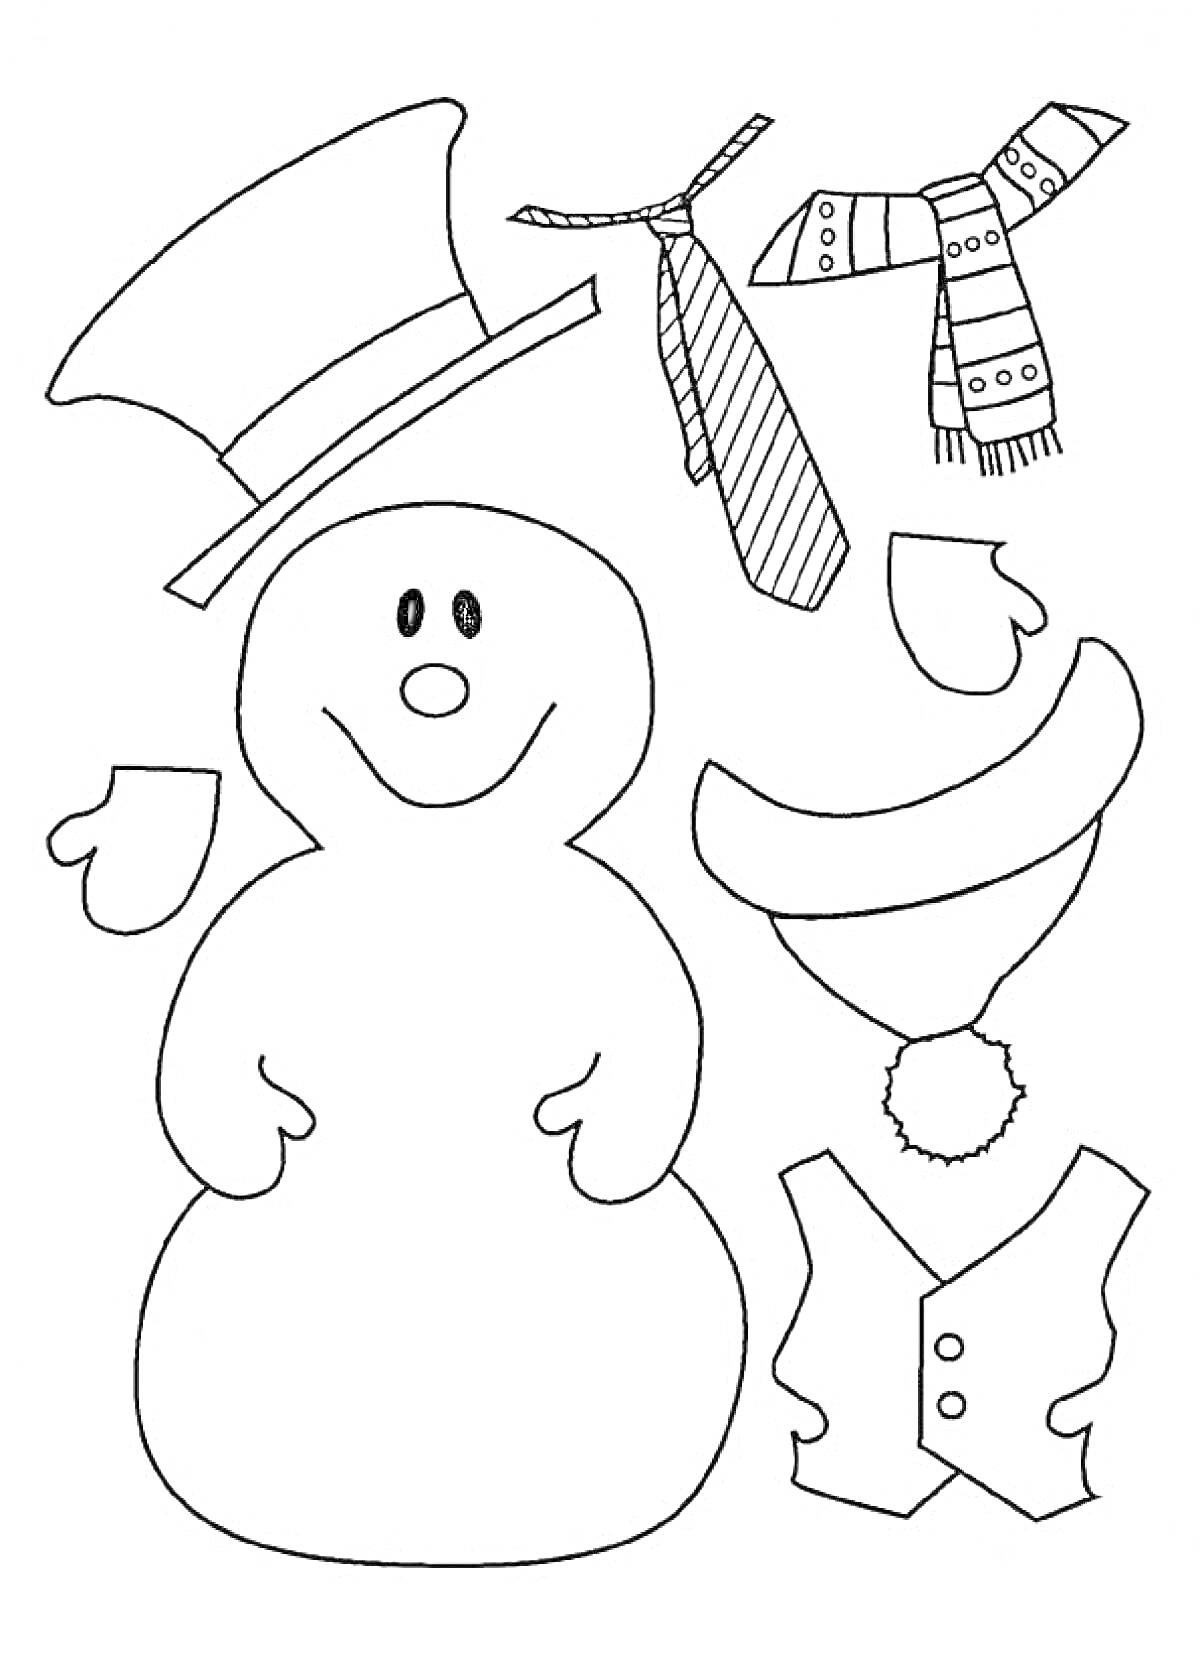 Снеговик с аксессуарами (шляпа, гавайский венок, шарф, галстук, варежки, жилет)